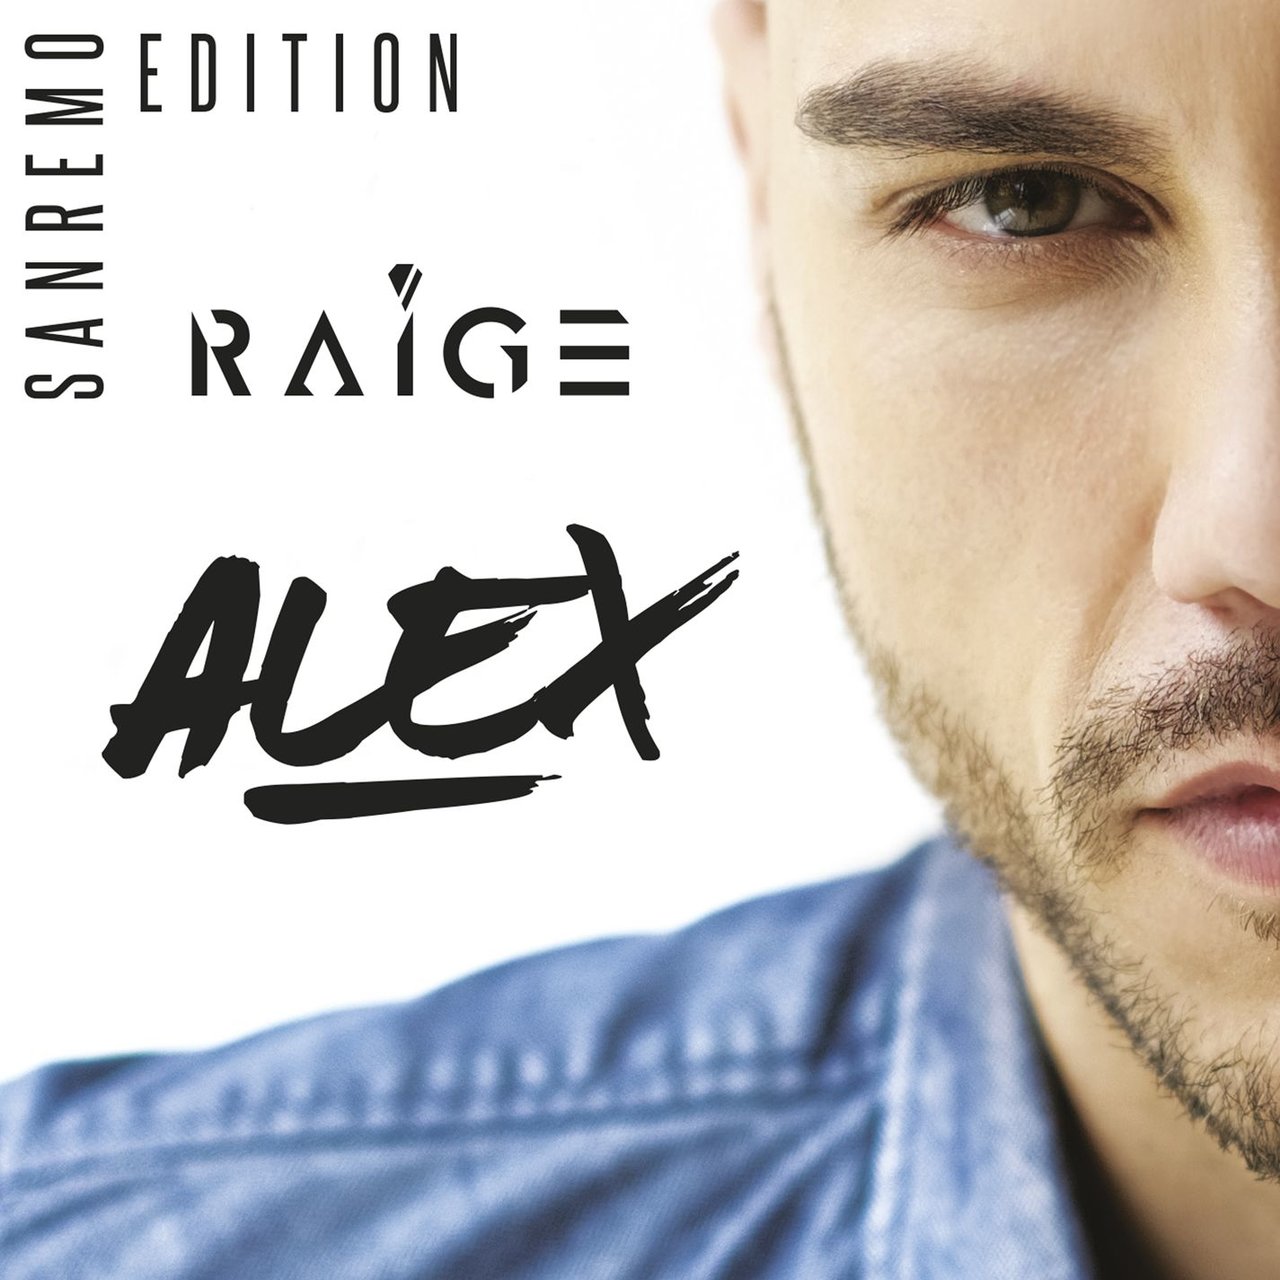 Raige Alex - Sanremo Edition cover artwork